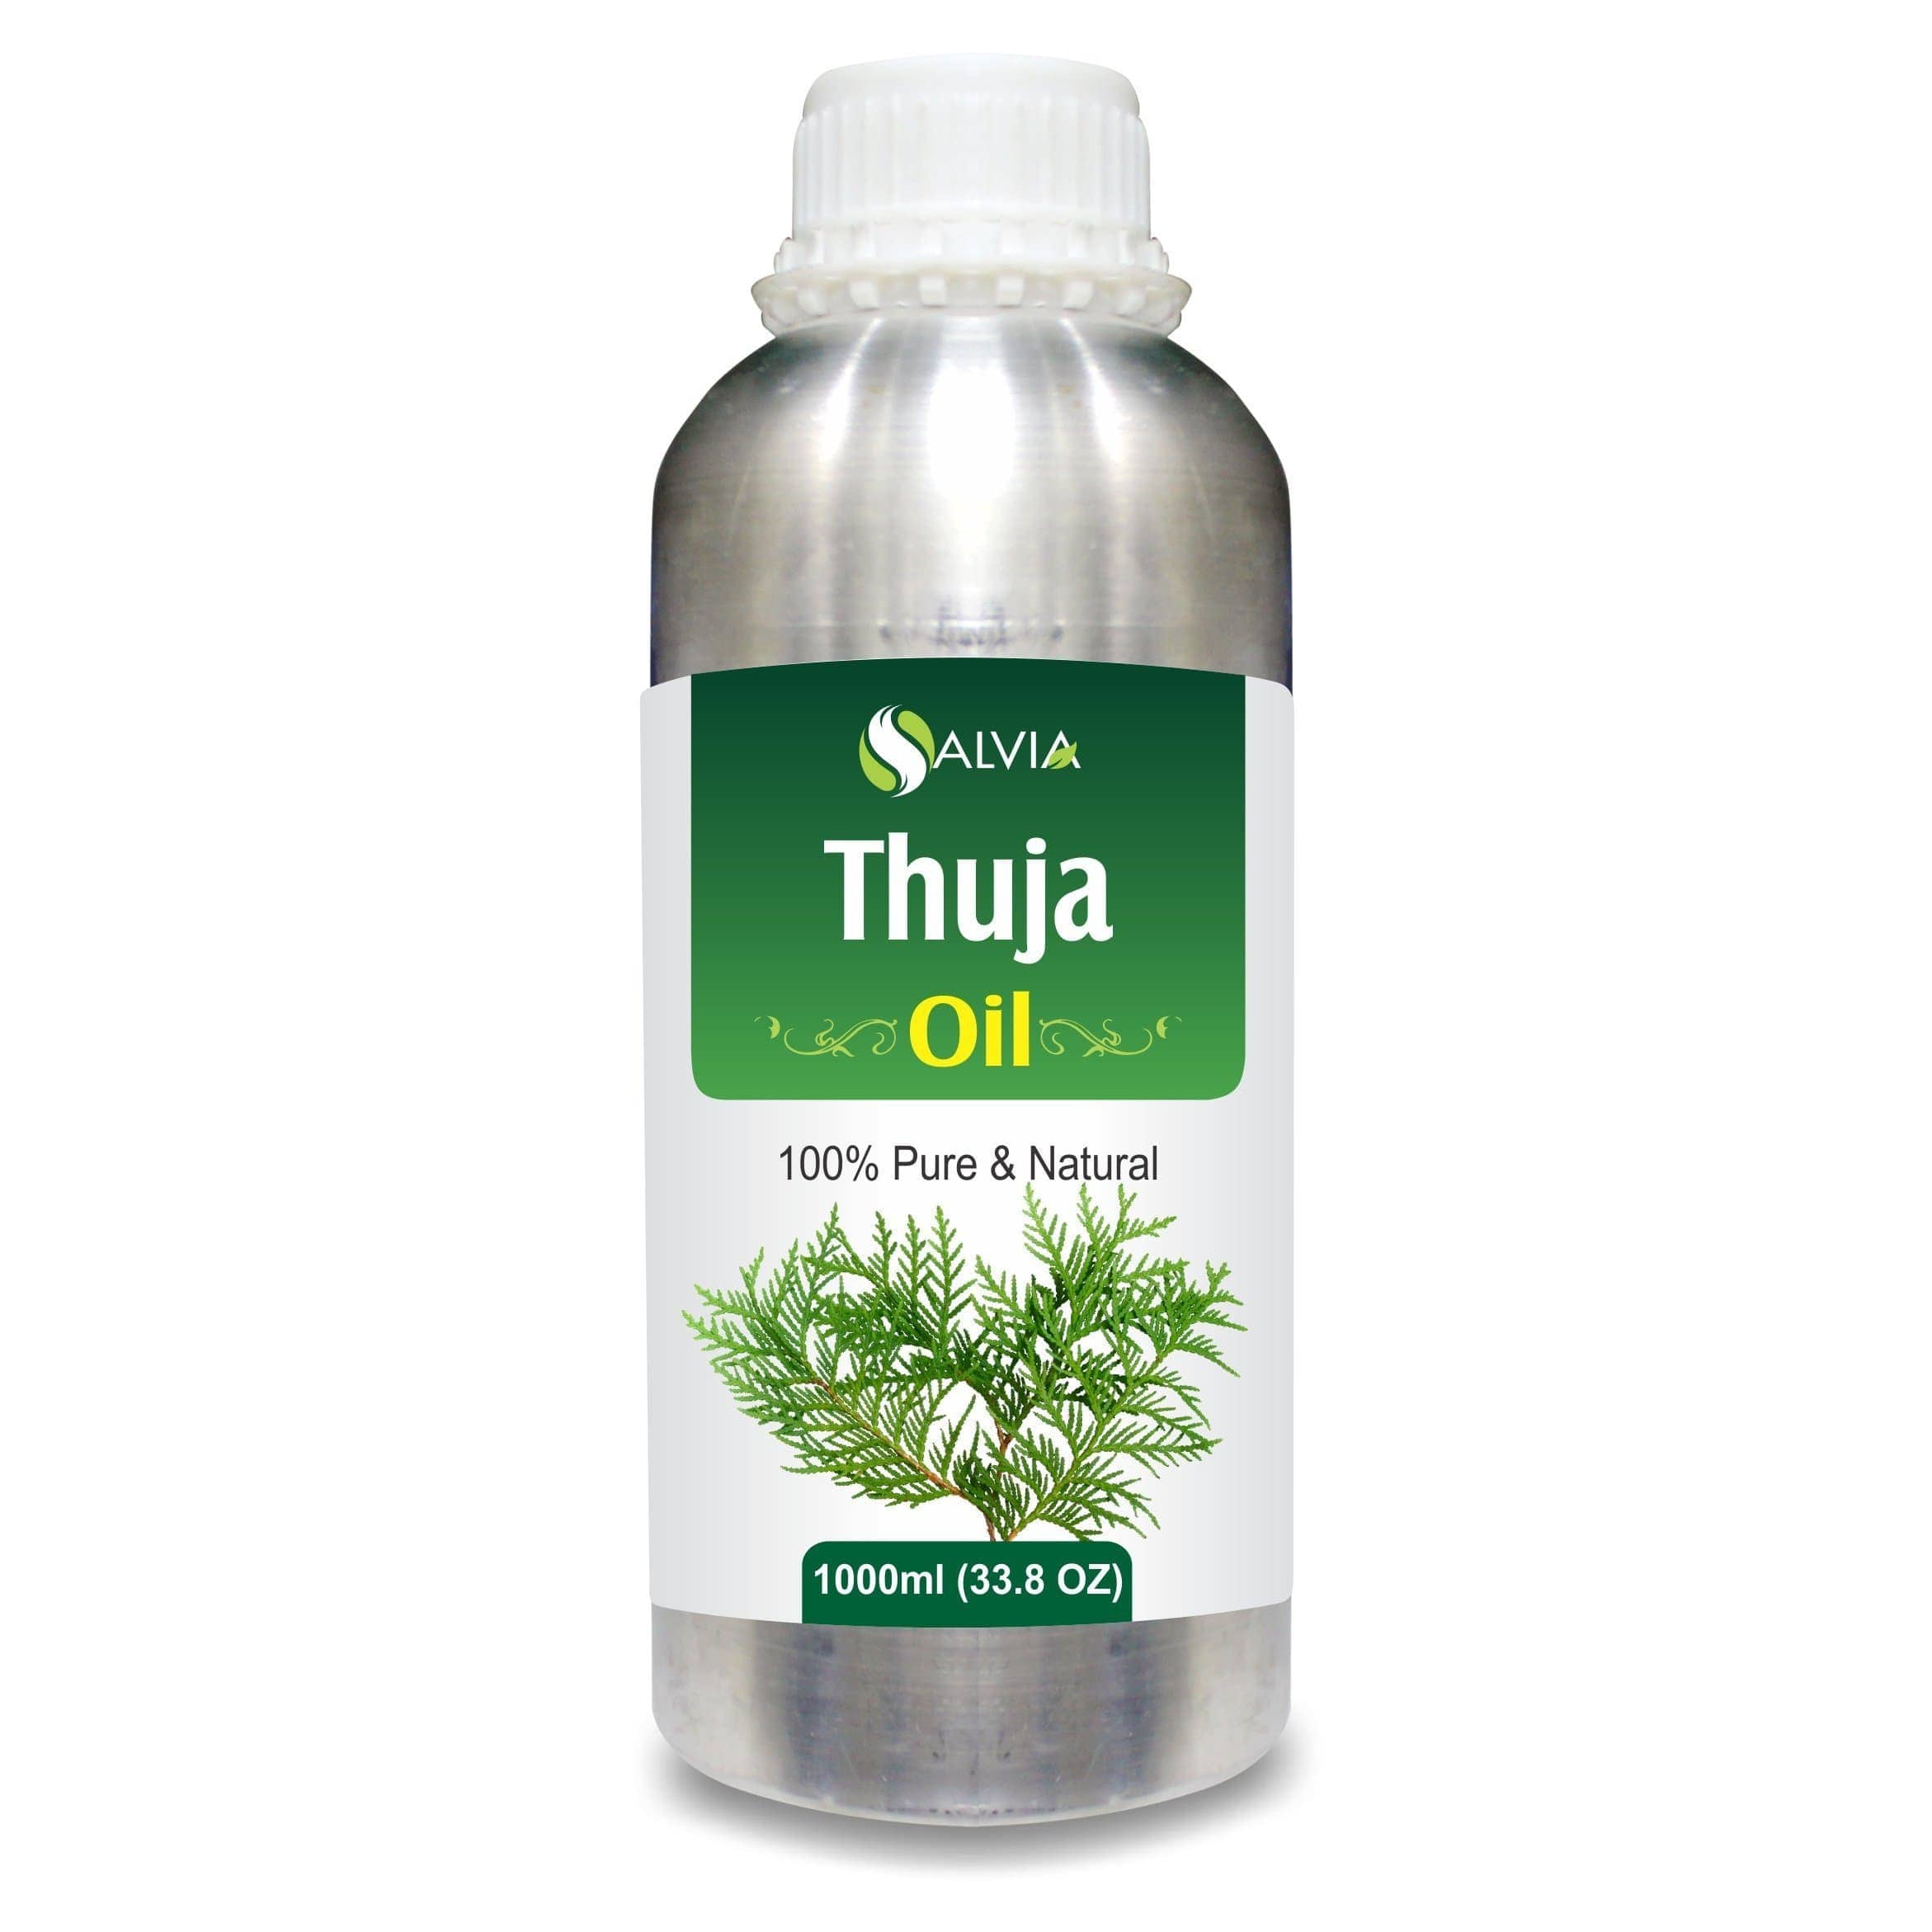 thuja oil for skin